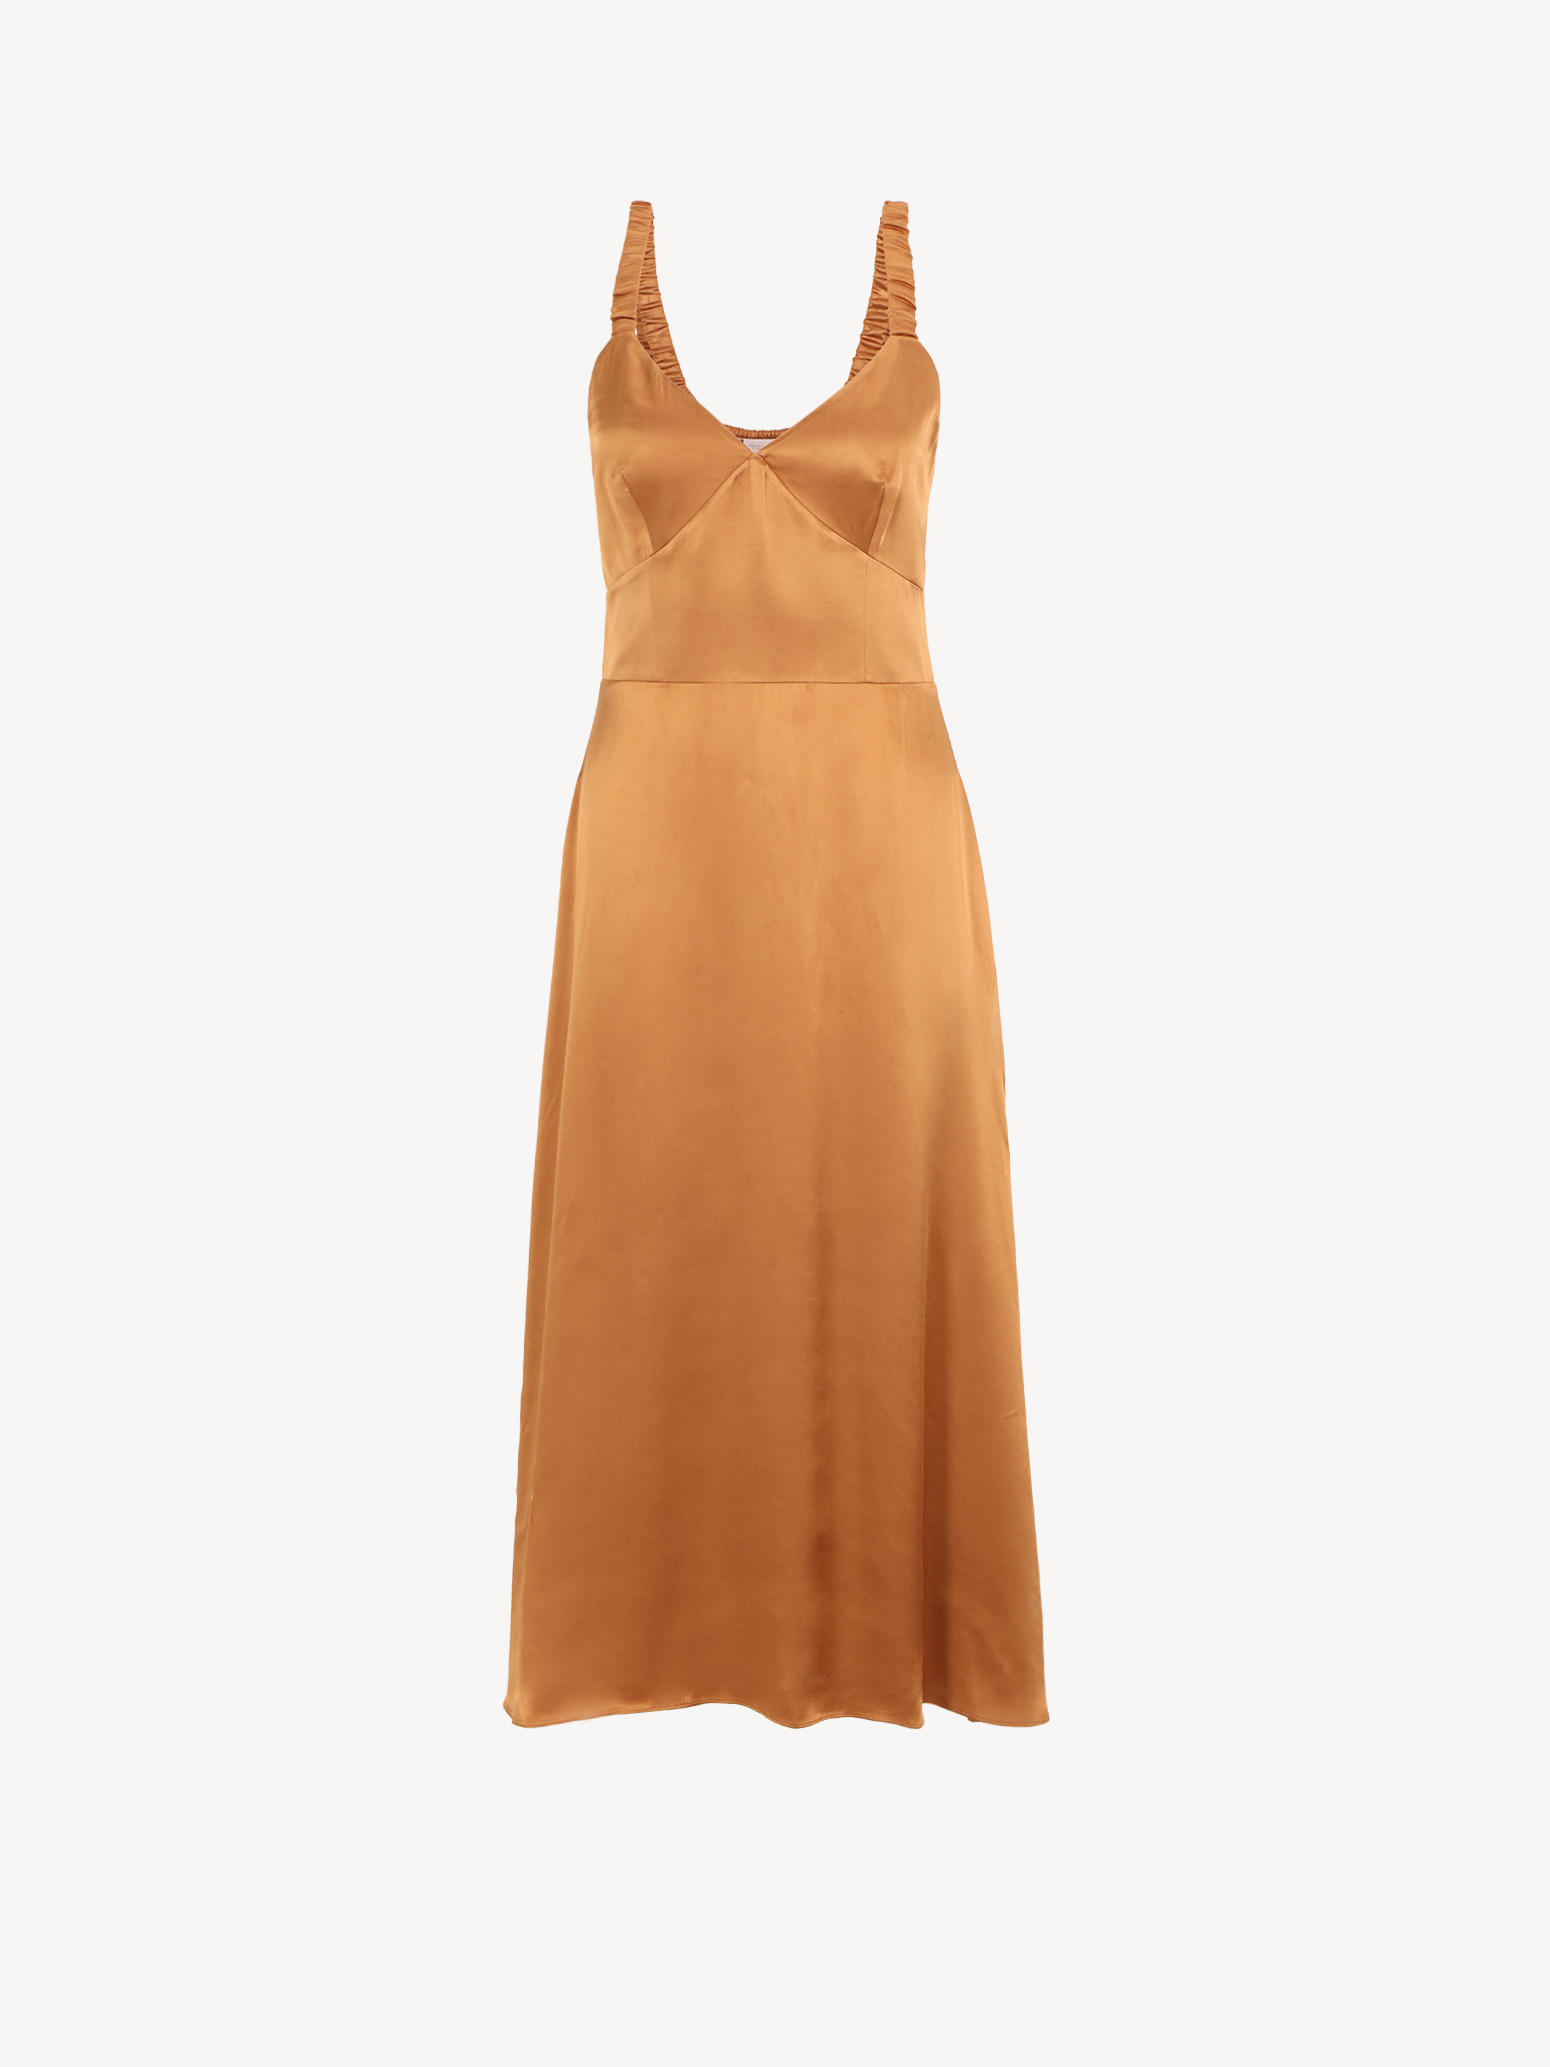 Kleid - braun TAW0049-70023: Tamaris Kleider & Röcke online kaufen!